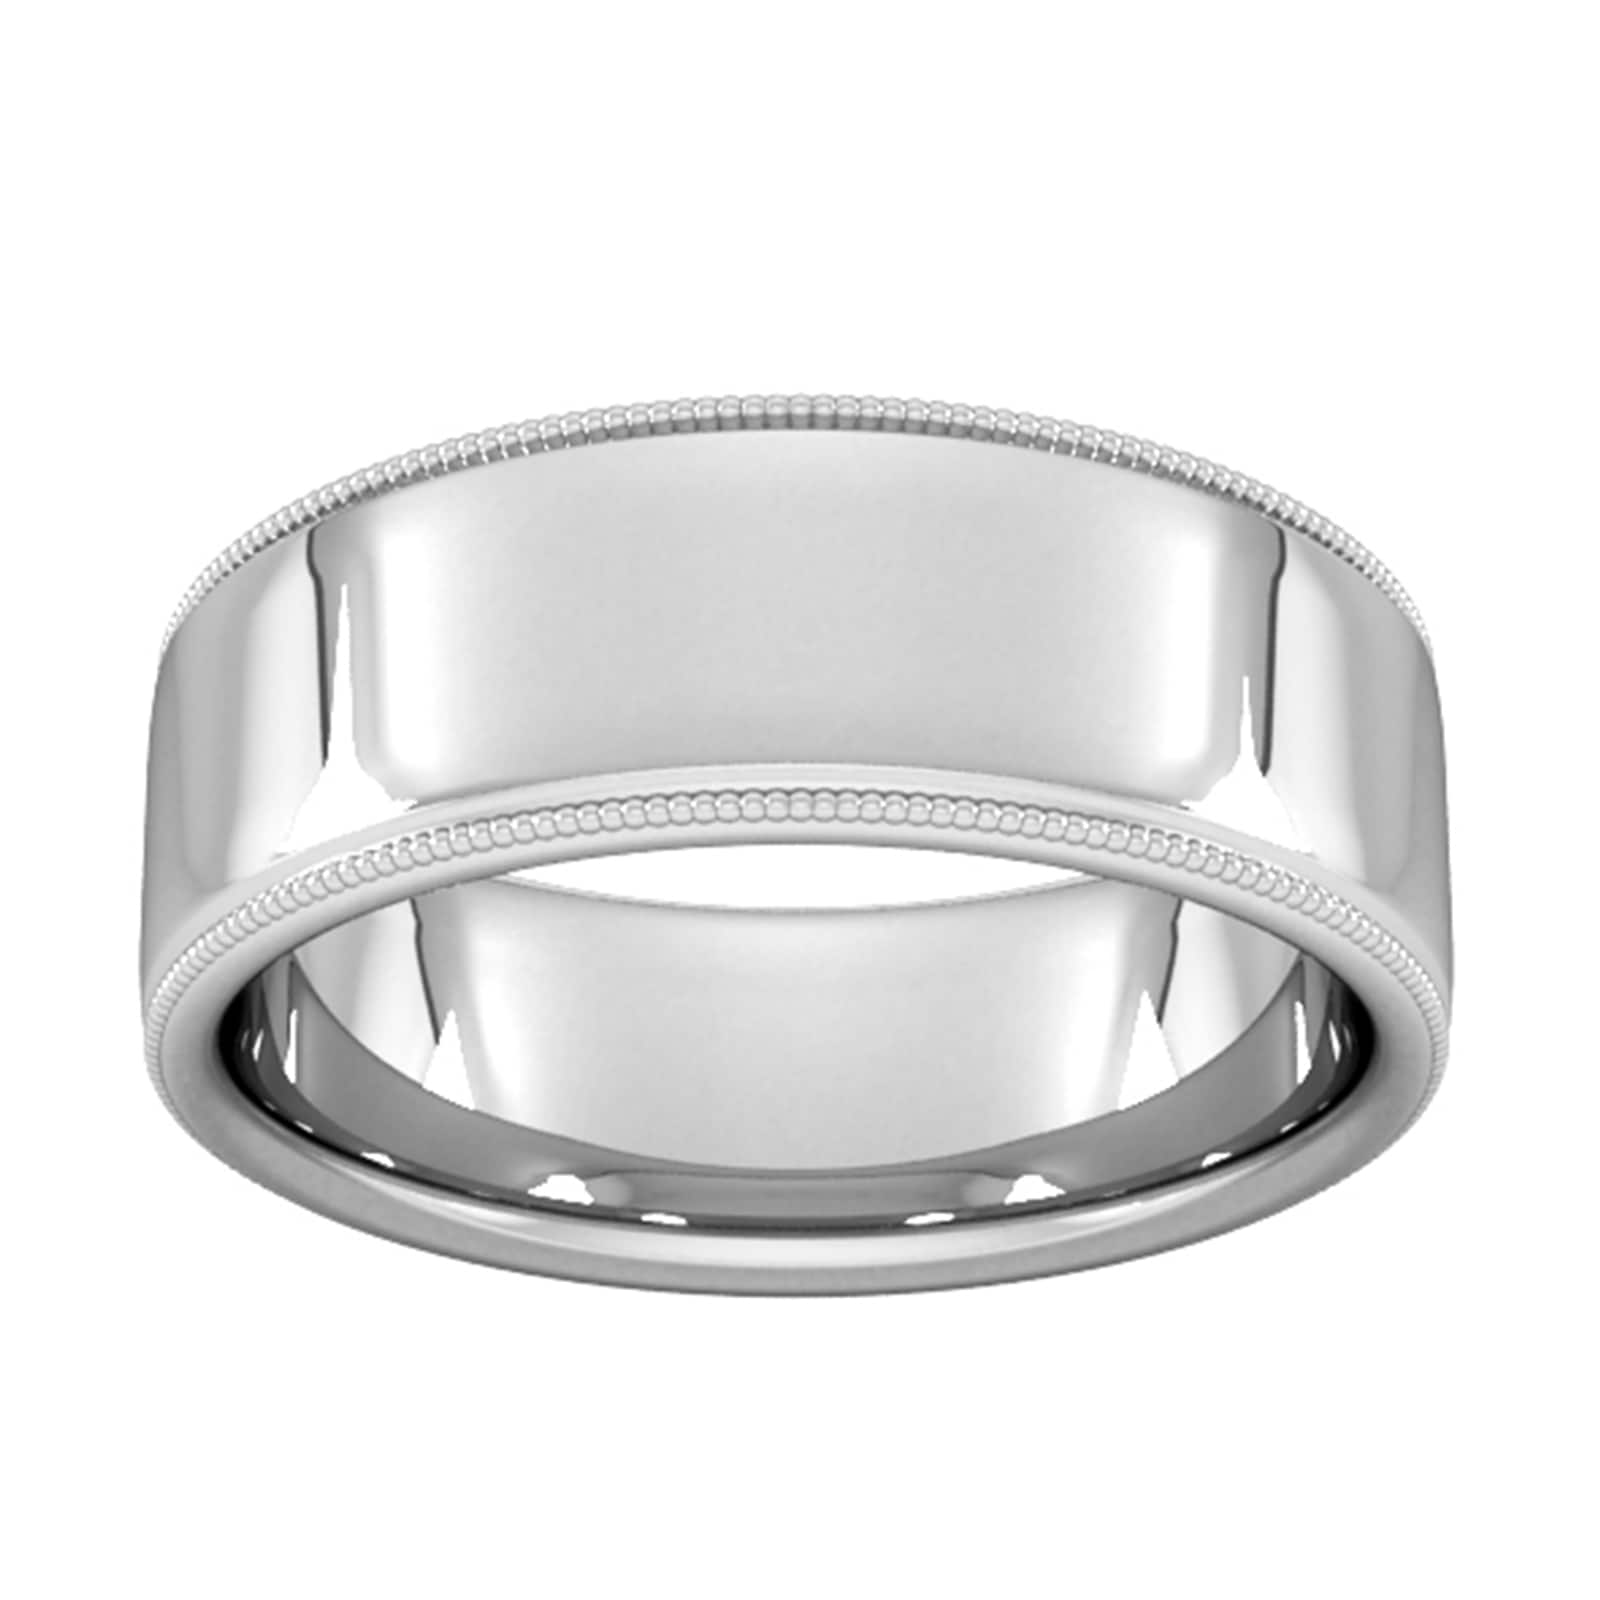 8mm Slight Court Extra Heavy Milgrain Edge Wedding Ring In 9 Carat White Gold - Ring Size G